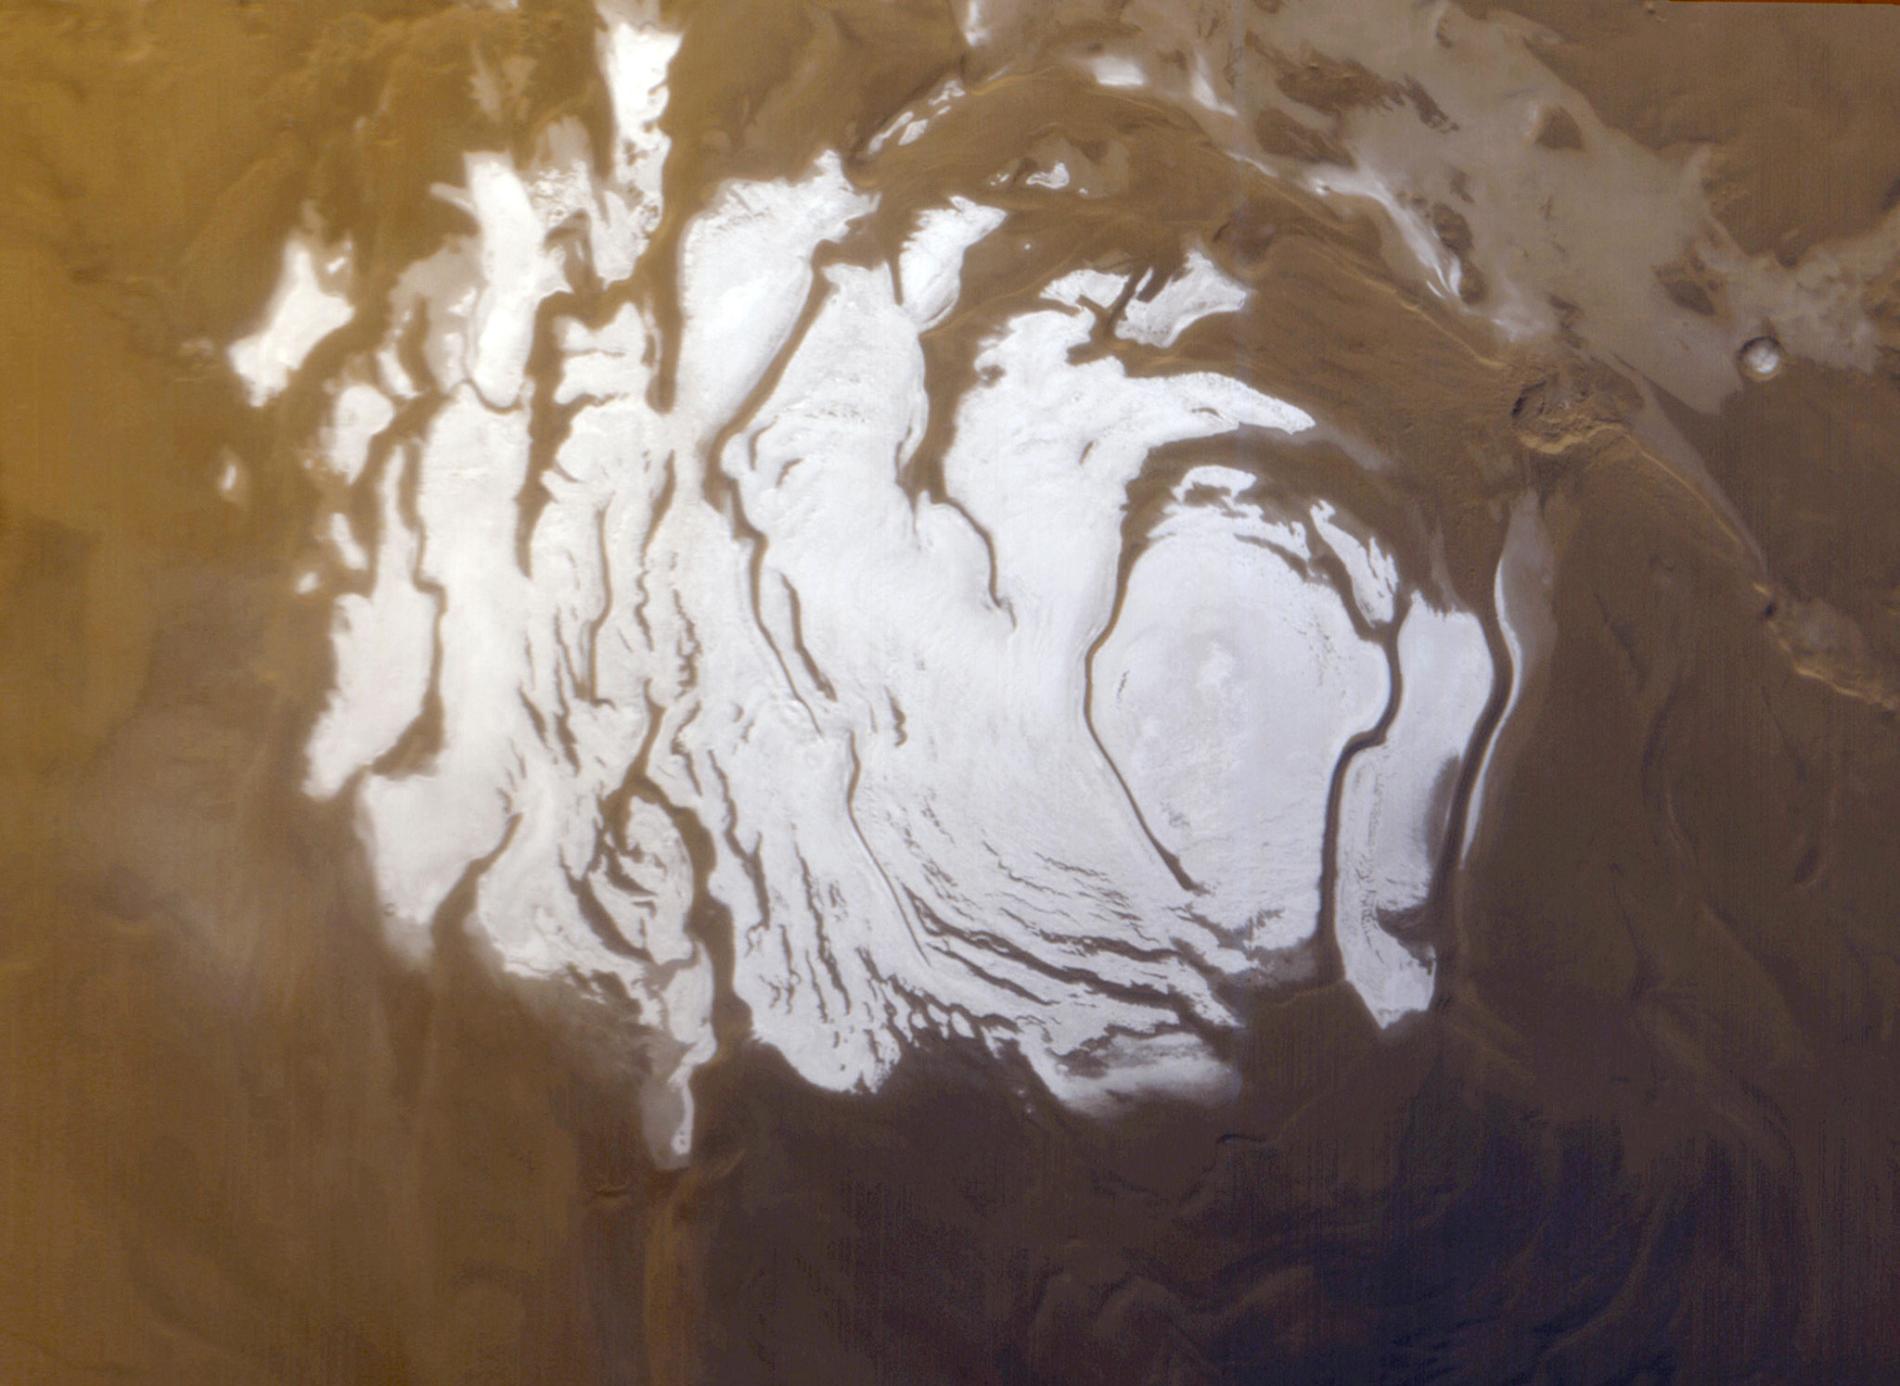 South polar cap on Mars